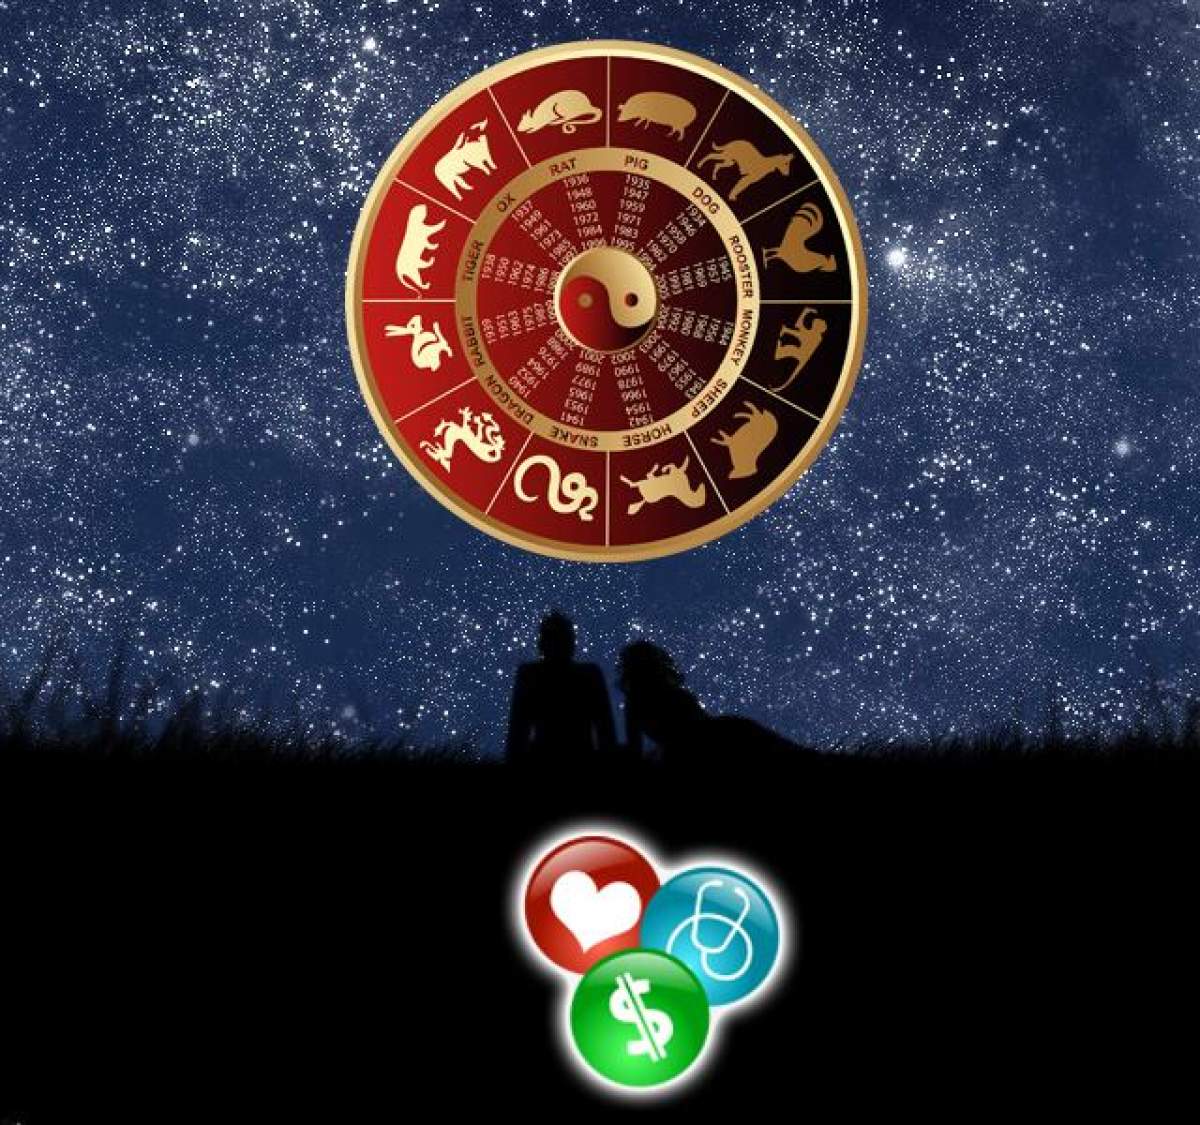 Horoscop chinezesc pentru miercuri, 23 octombrie 2019. Calul visează la weeekend,iar cocoșul este independent